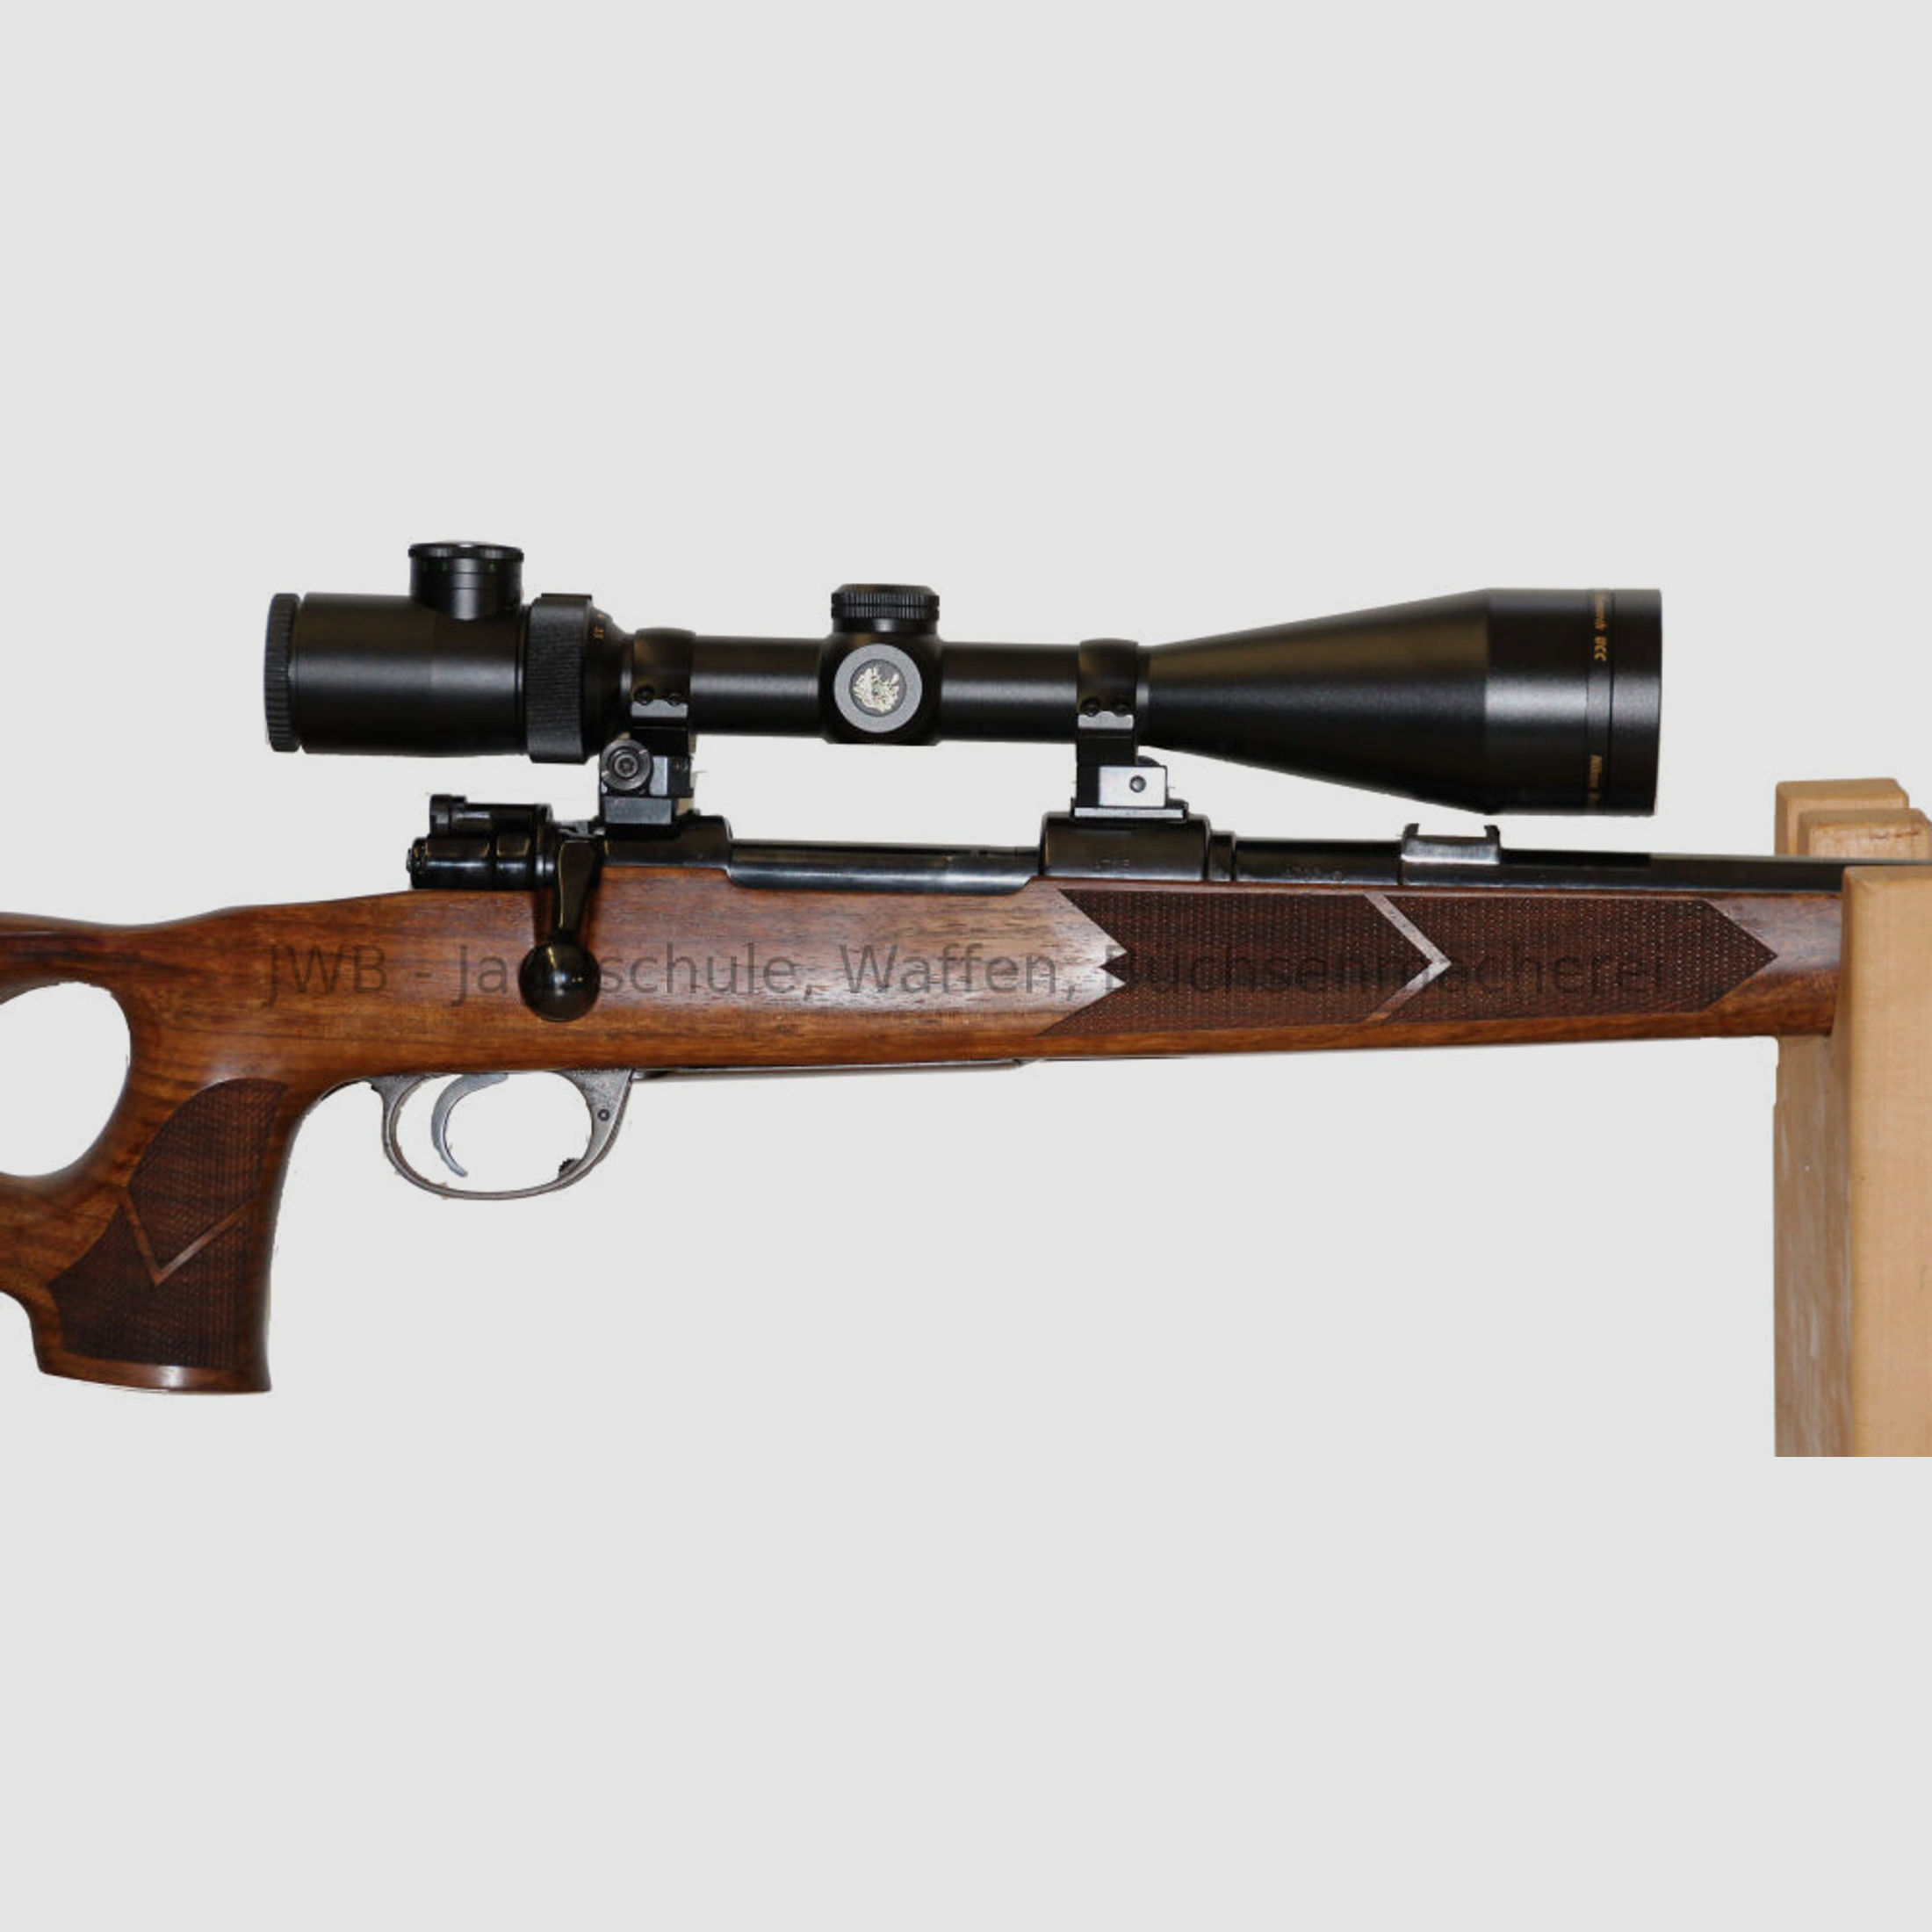 Mauser System 98, Kal. 8 x 57 IS mit Lochschaft - ansehen lohnt sich